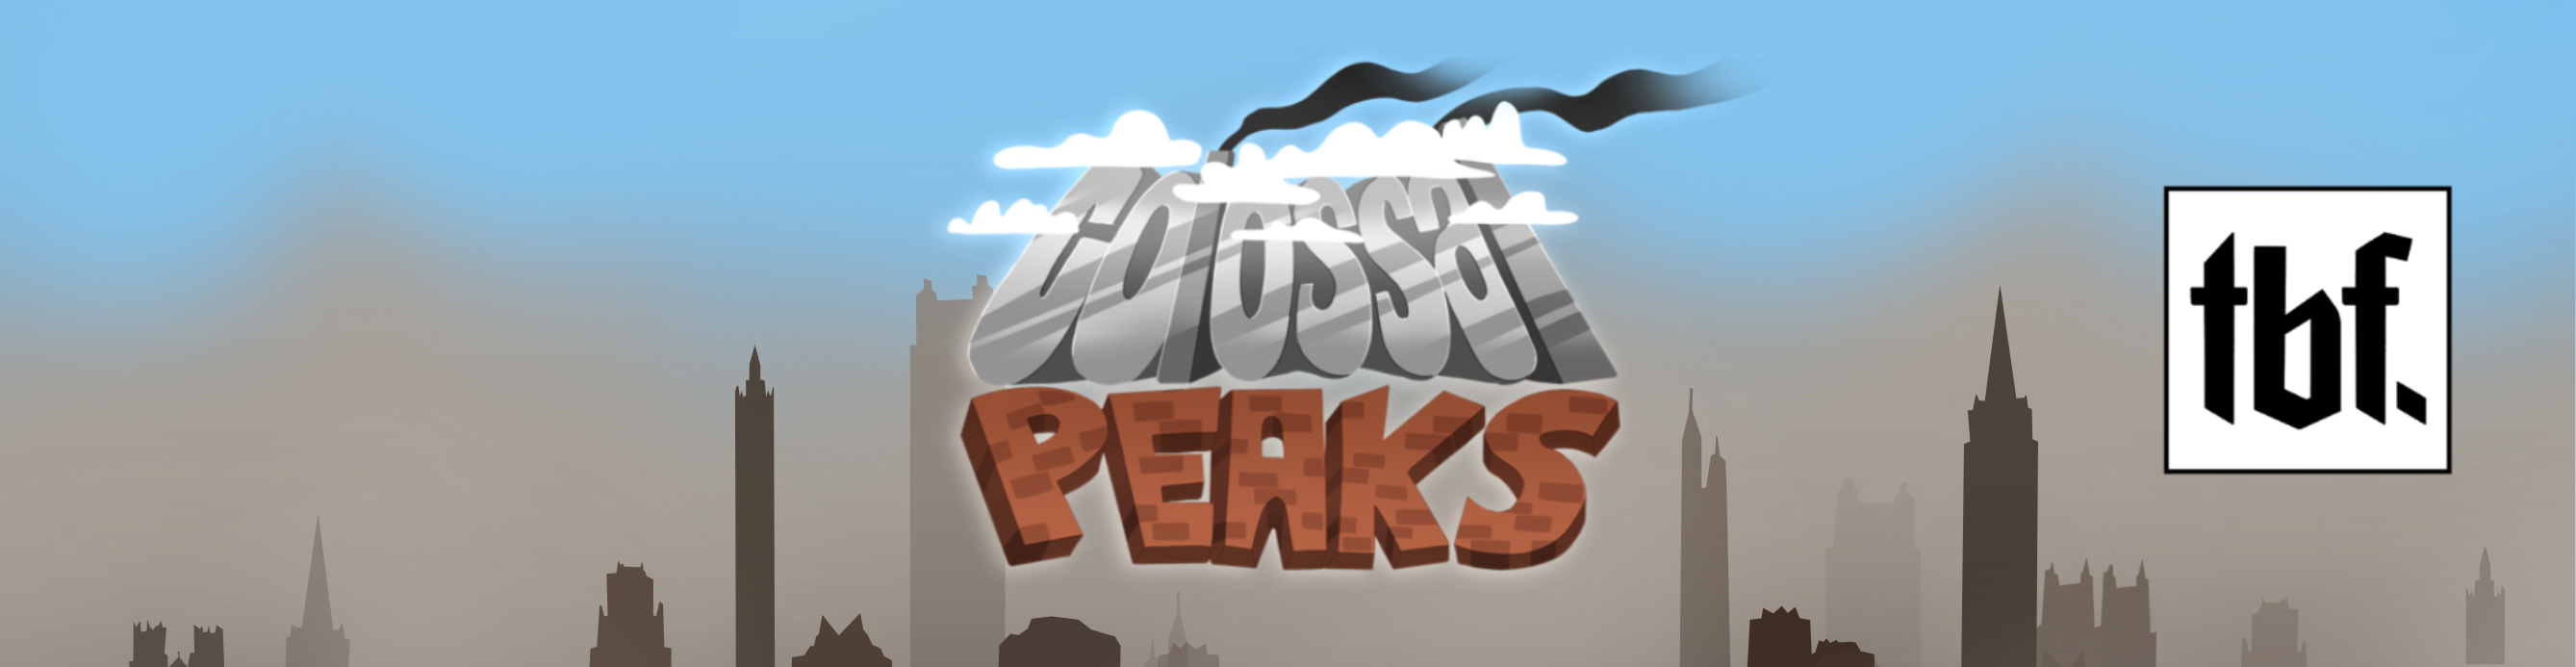 Colossal Peaks